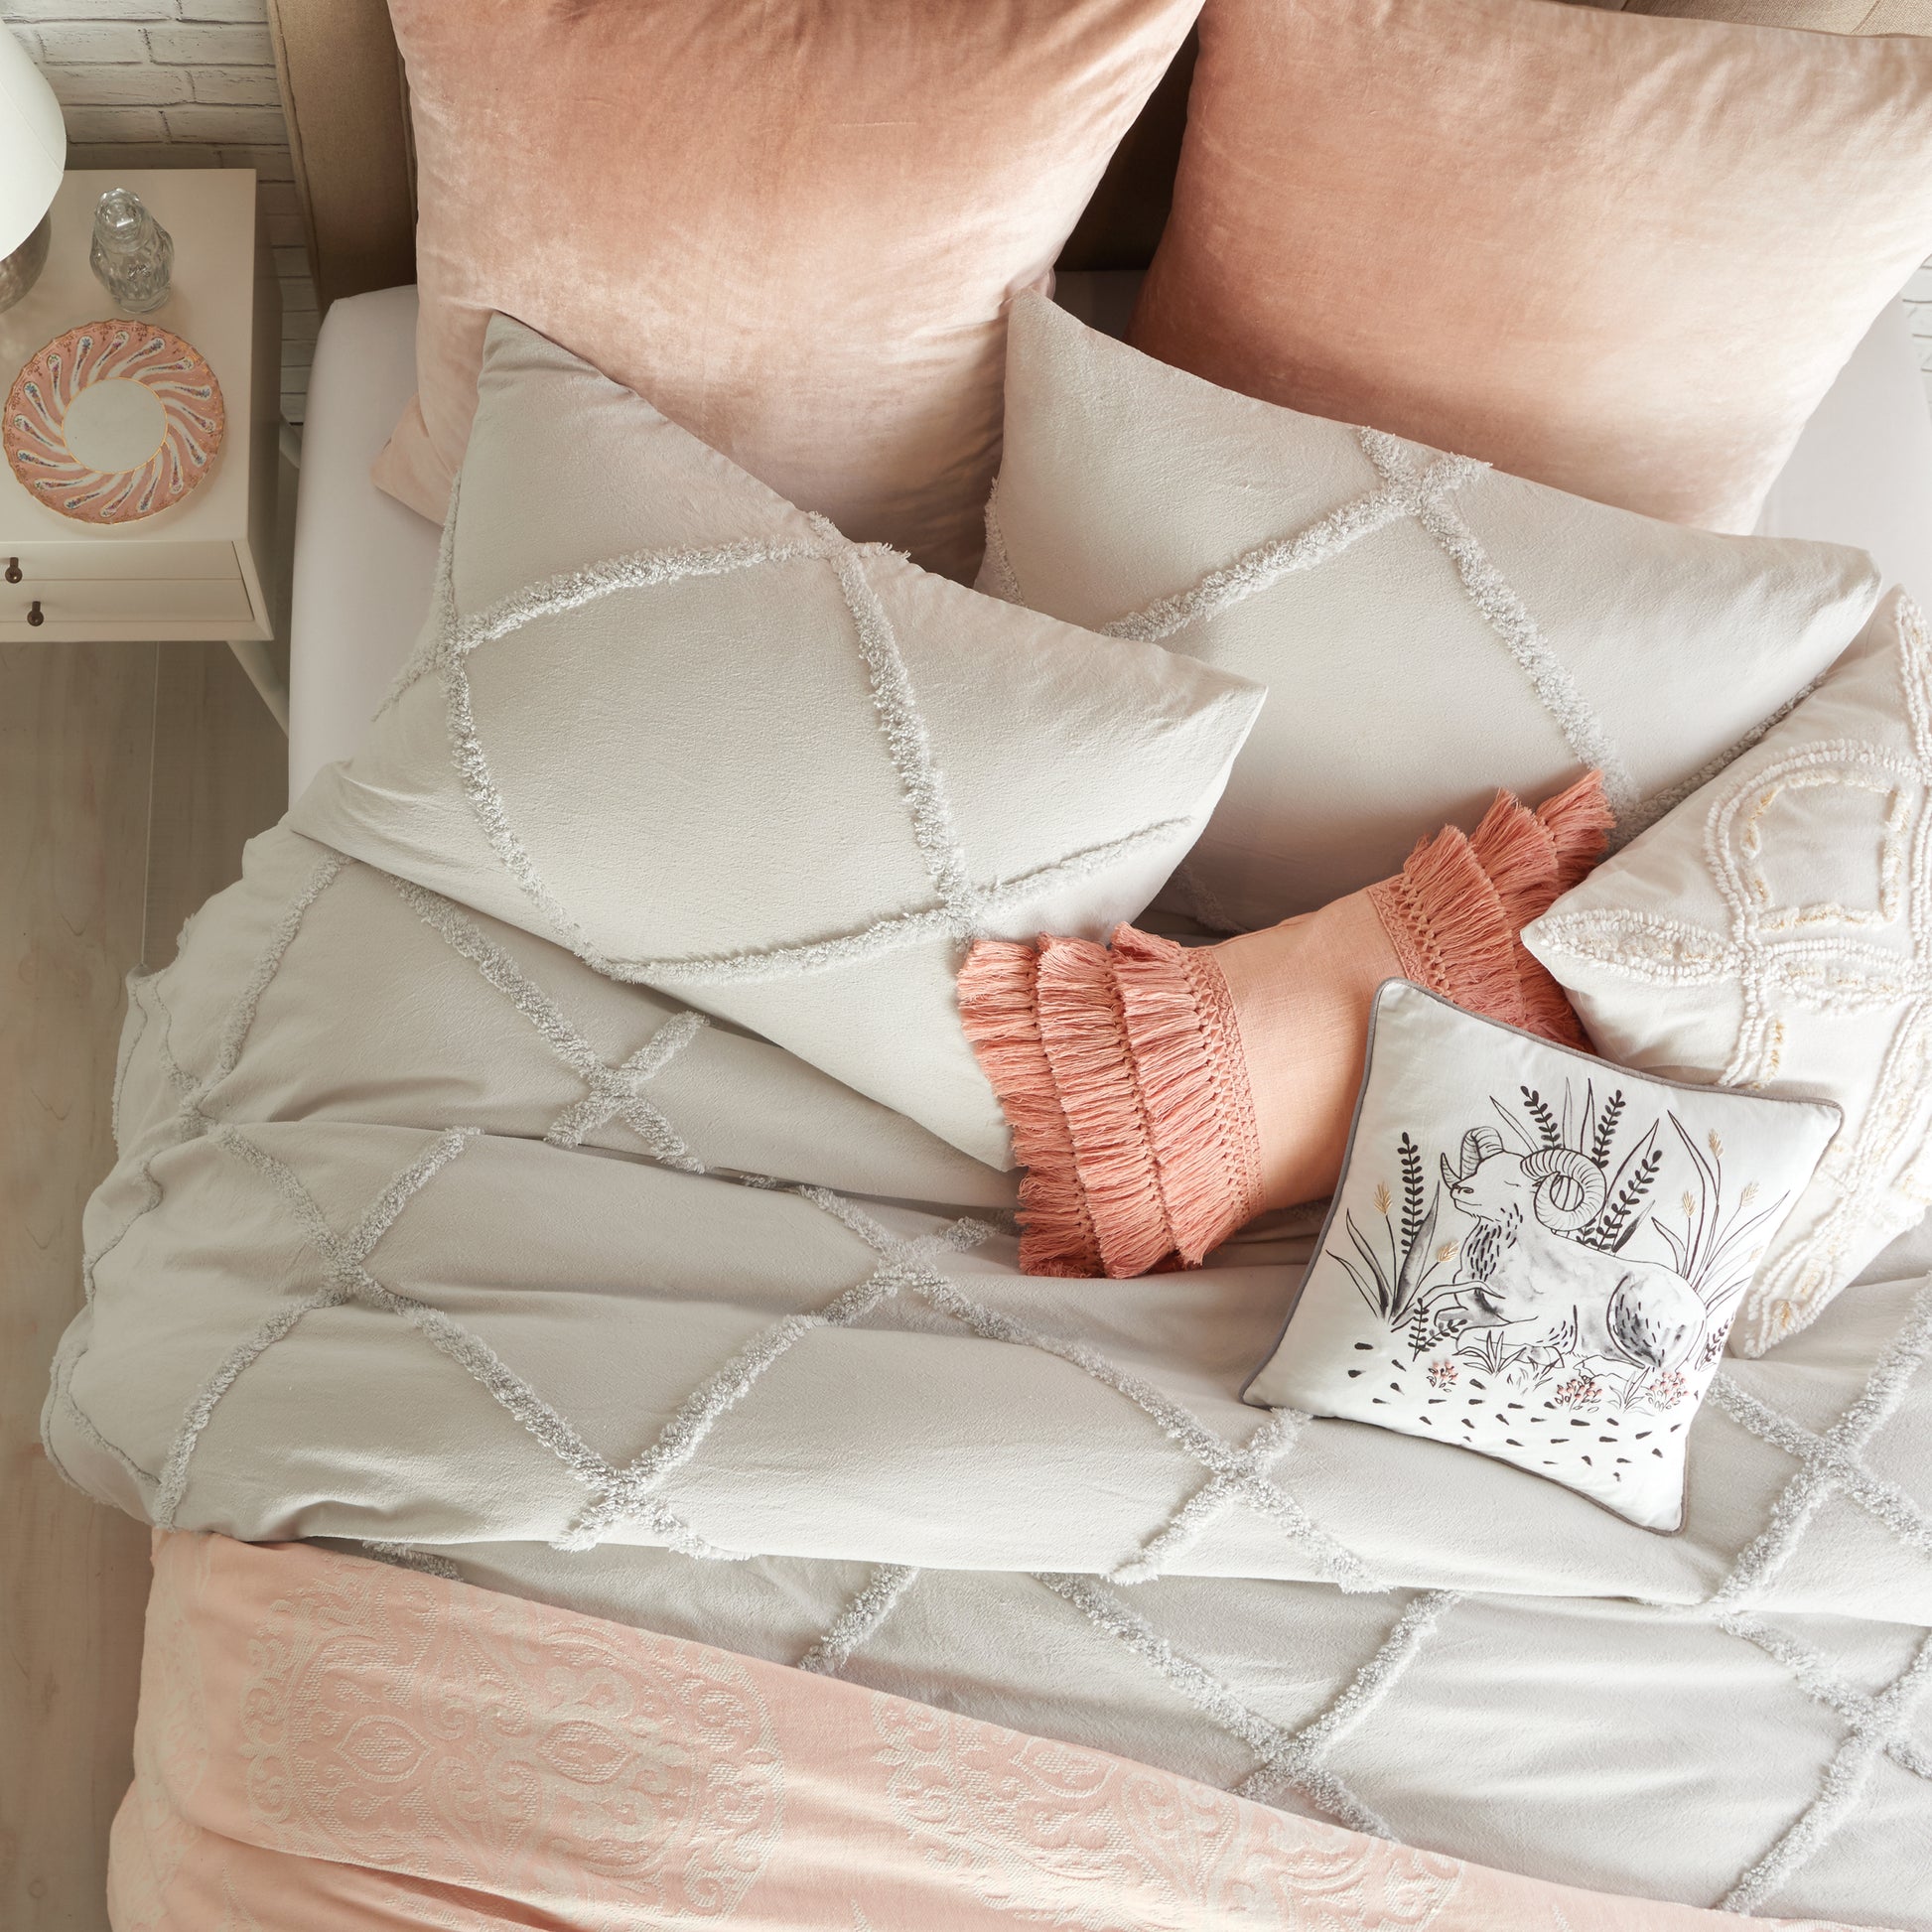 Peri Home Chenille Lattice Comforter Bedding Collection grey